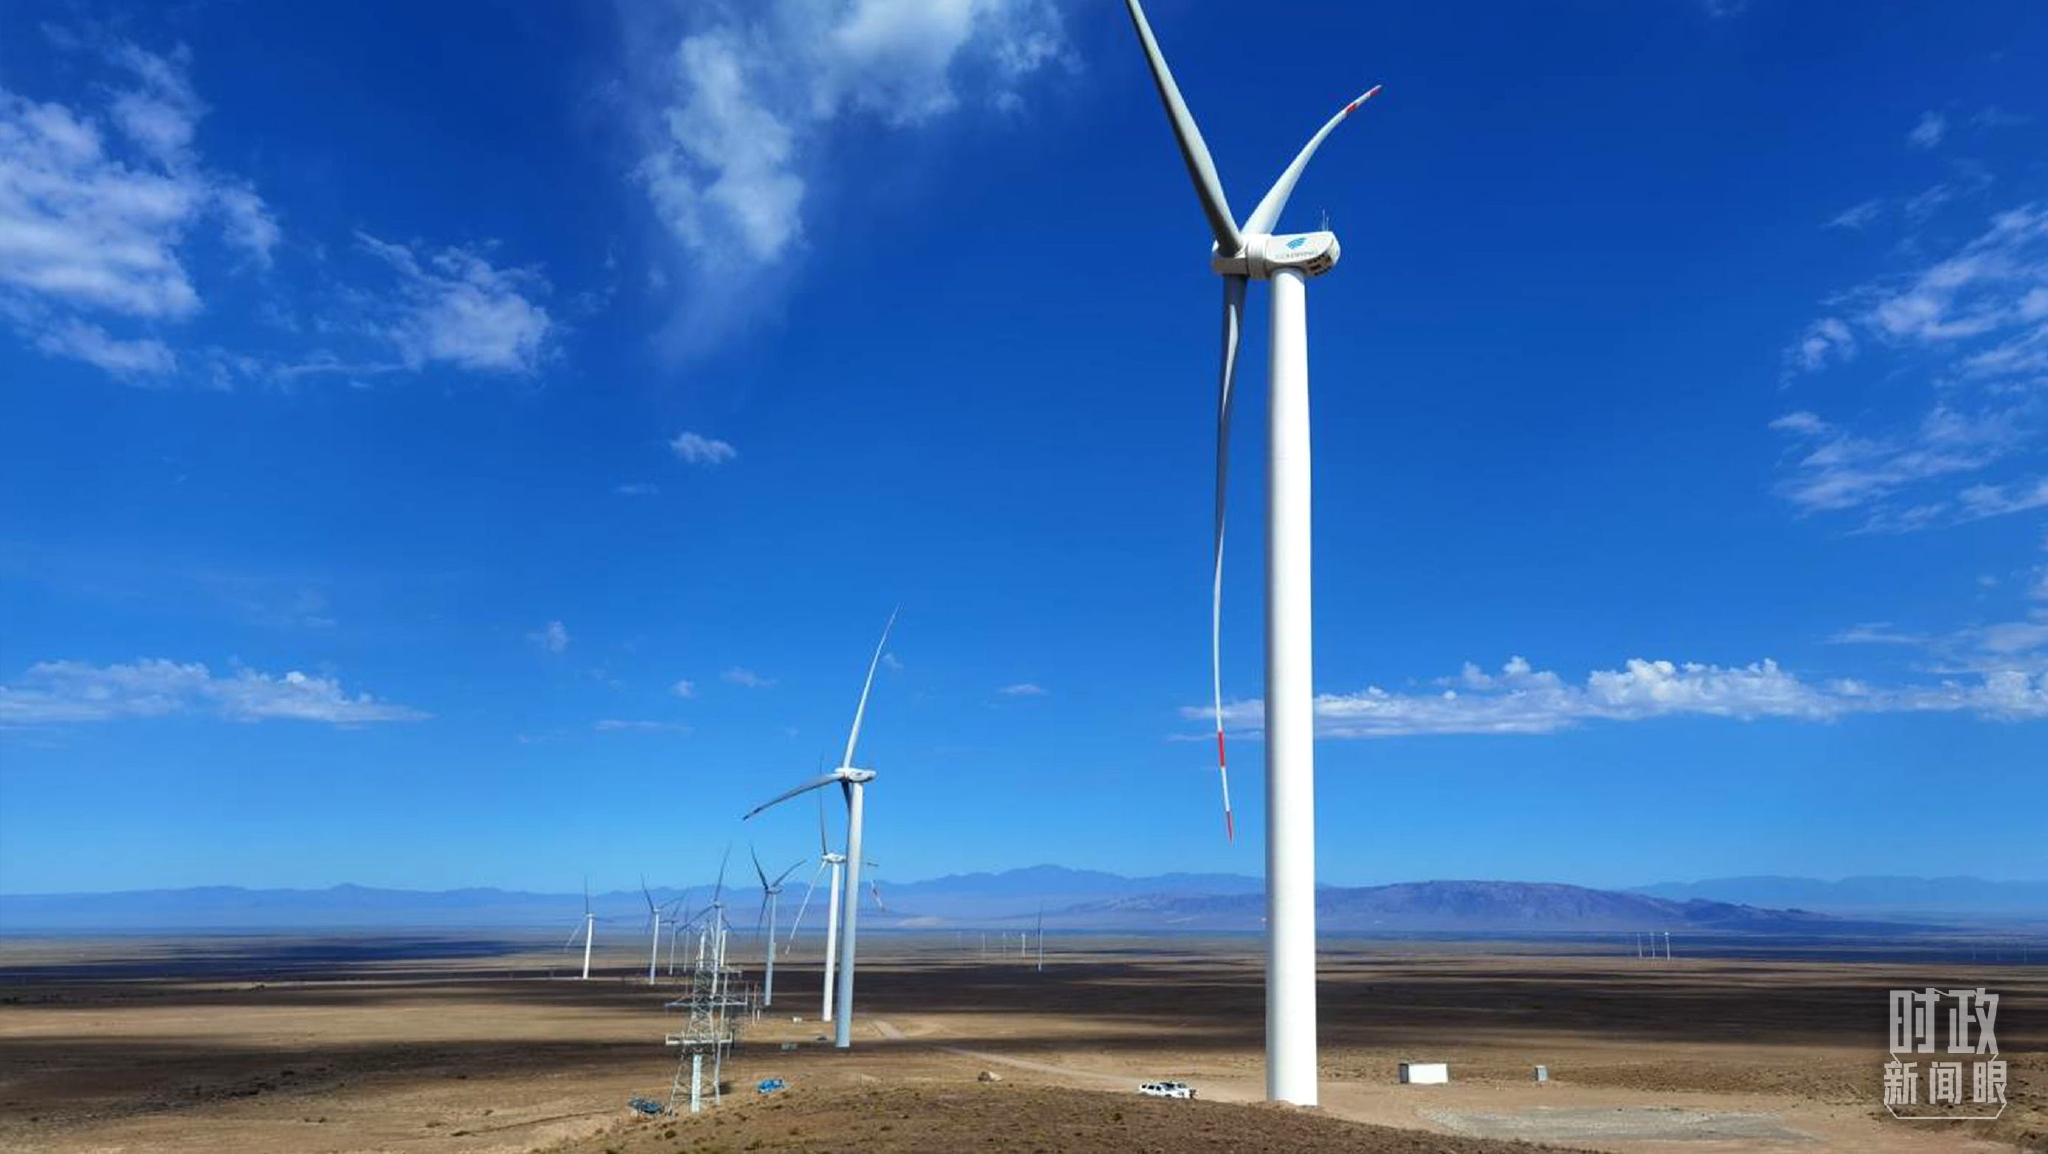 △中哈共建的谢列克风电项目位于哈萨克斯坦阿拉木图州，被列入“中哈产能合作重点项目清单”。（资料图）